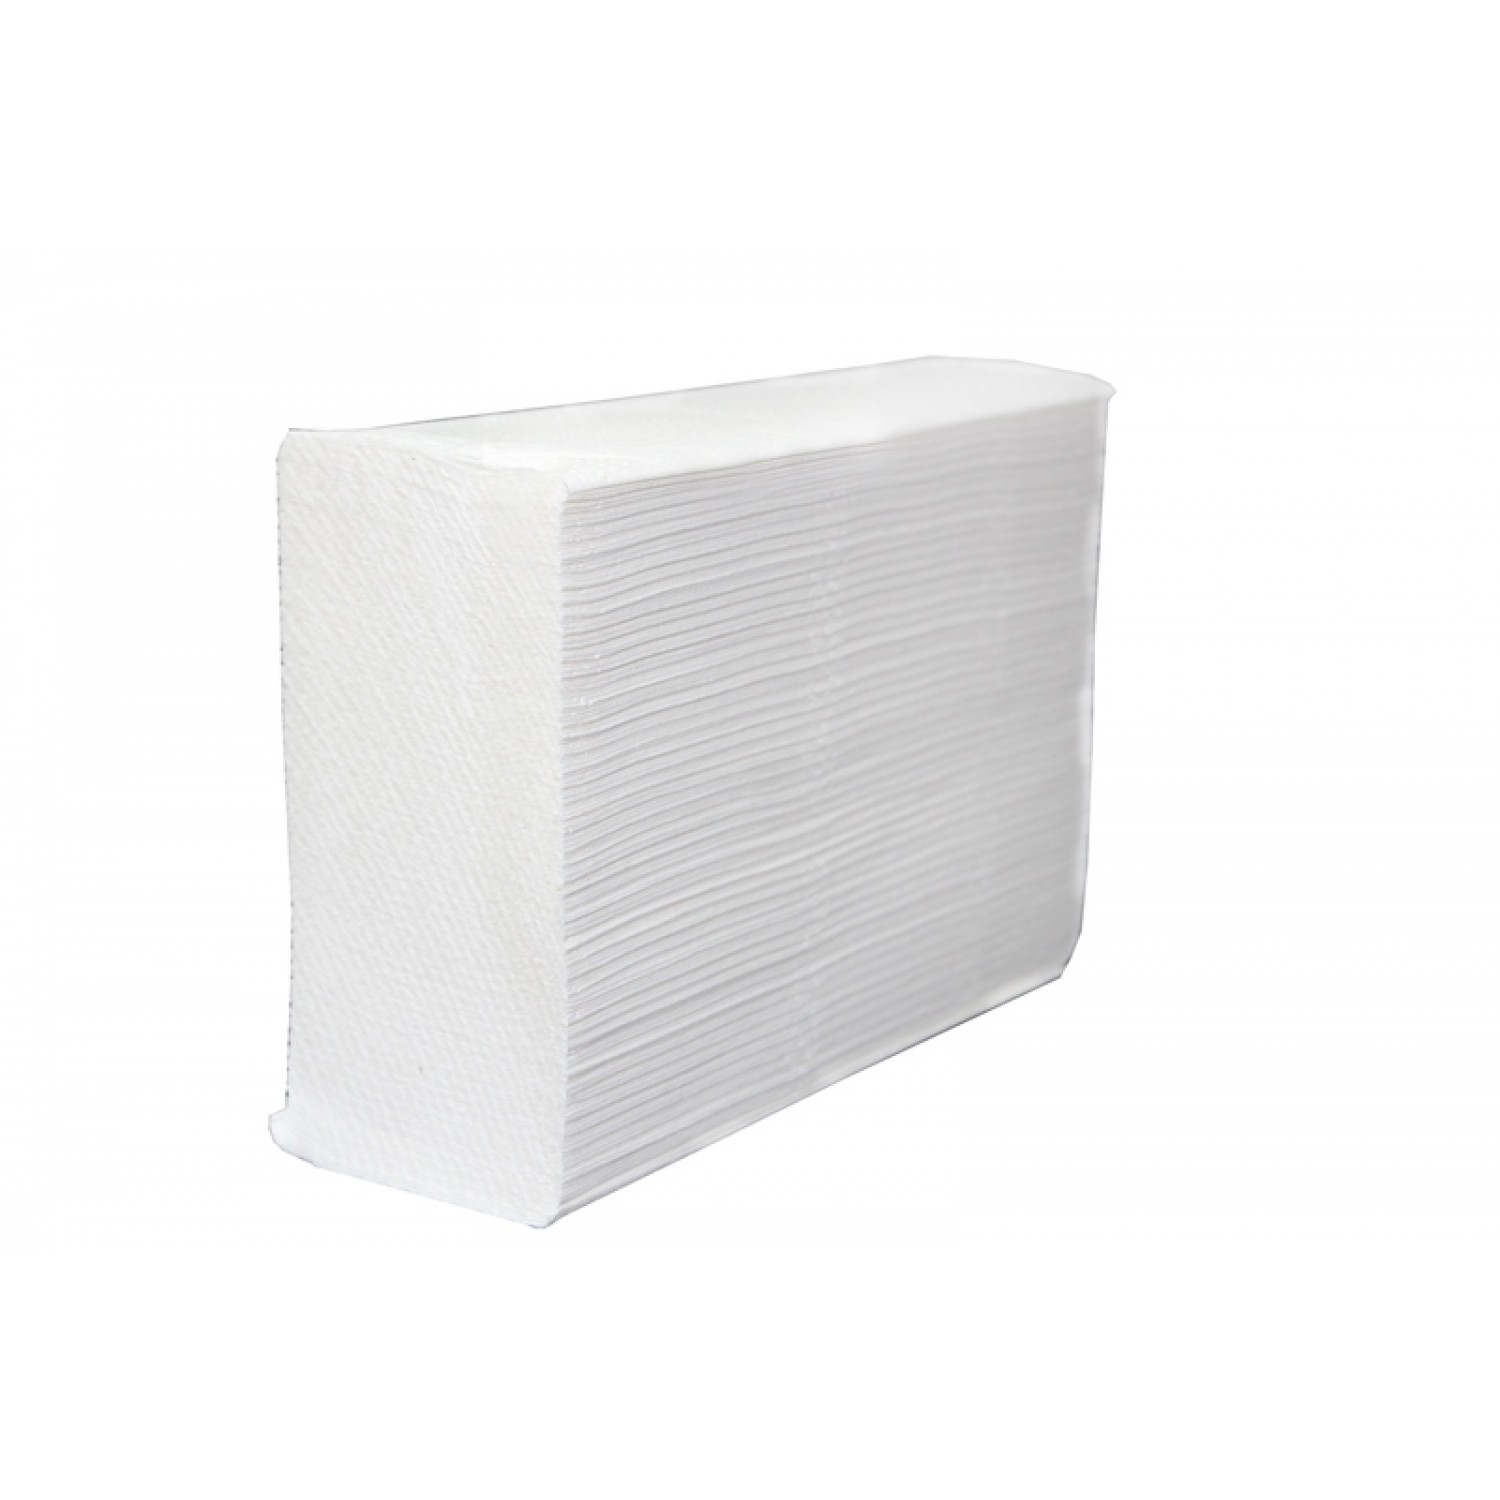 Бумажные полотенца в листах BINELE M-Lux, 15 пачек по 200 полотенец, арт. TZ52LA